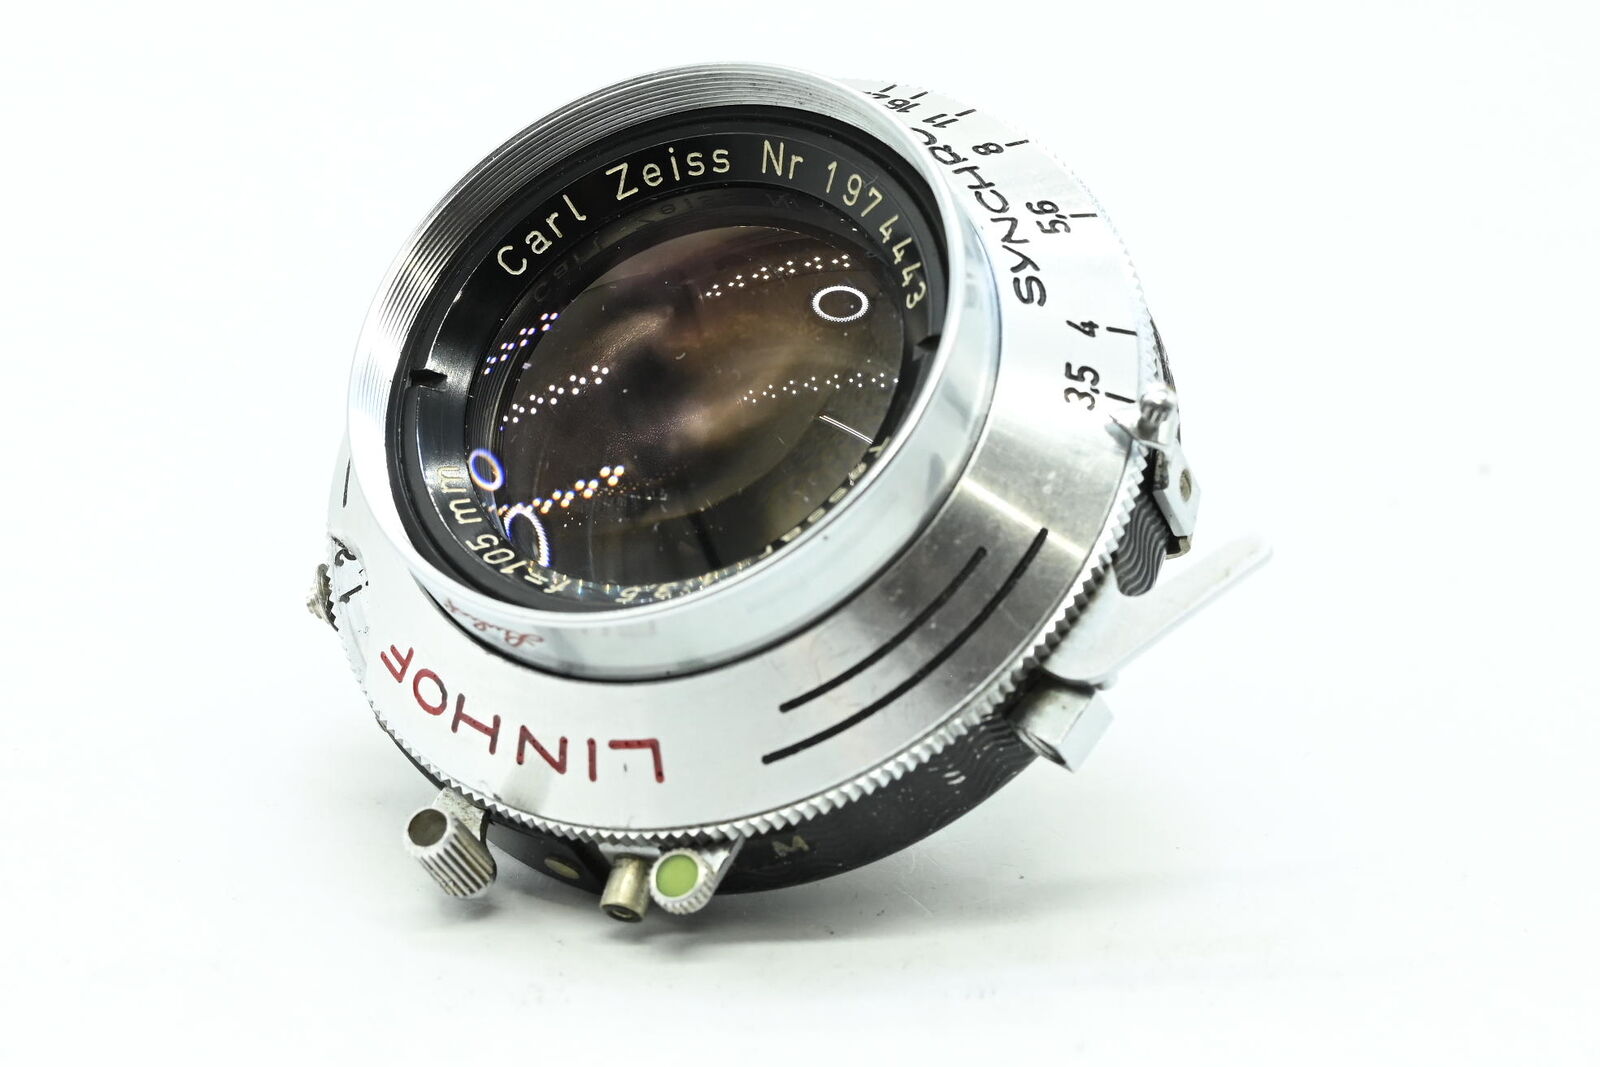 Linhof Carl Zeiss 105mm f3.5 Tessar w/Shutter Lens #443